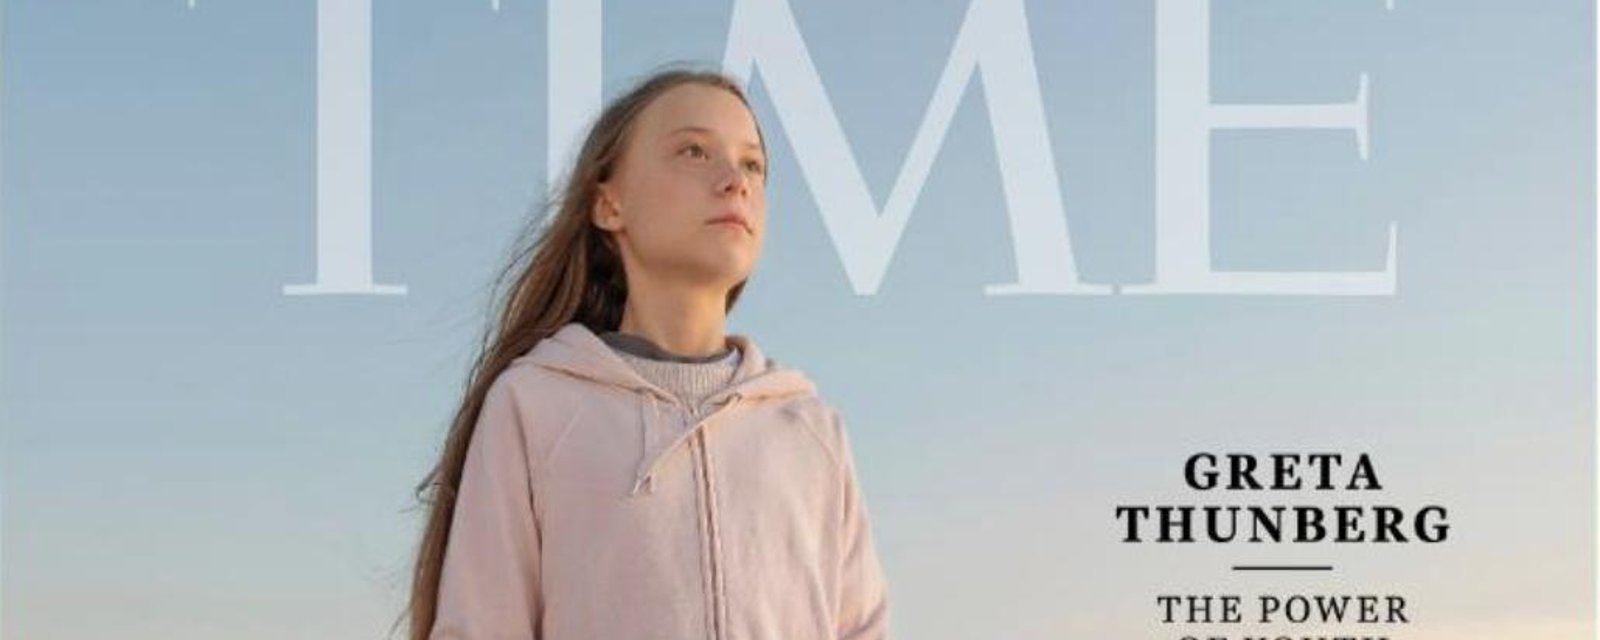 Greta Thunberg a été nommée Personnalité de l'année par le prestigieux magazine Time